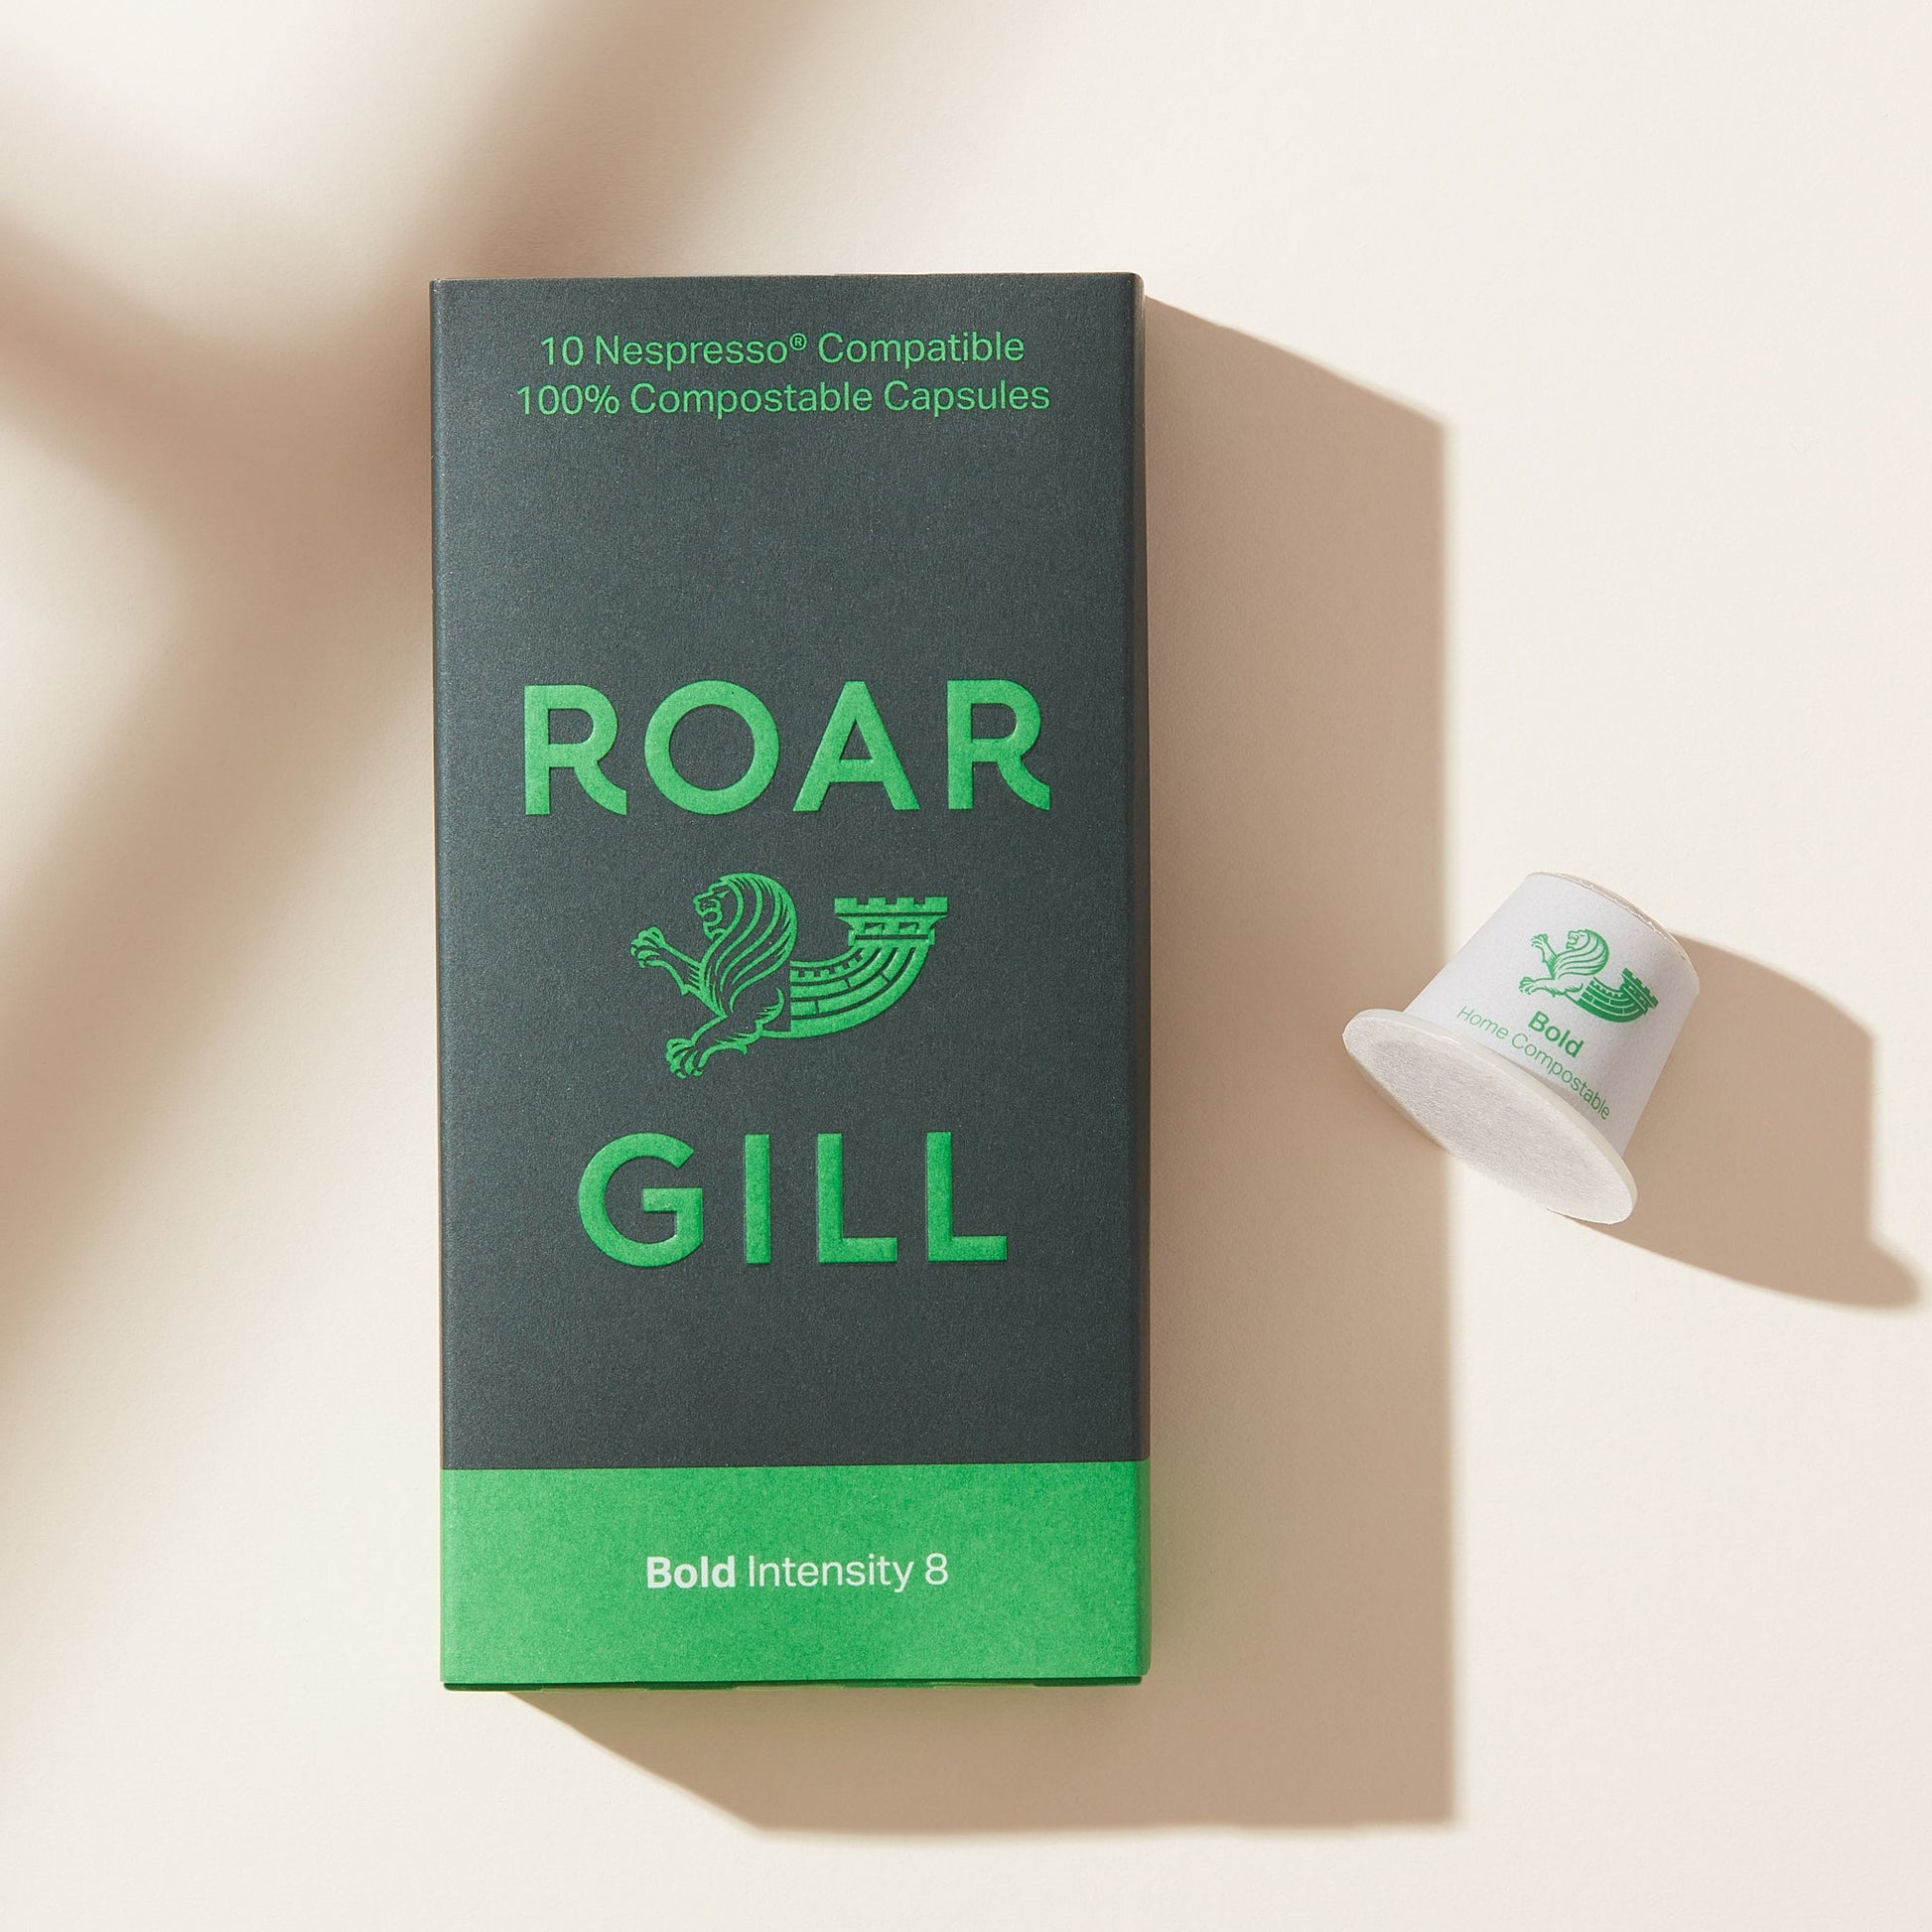 Roar Gill Bold Intensity 8 Coffee Pod. Box of 10.